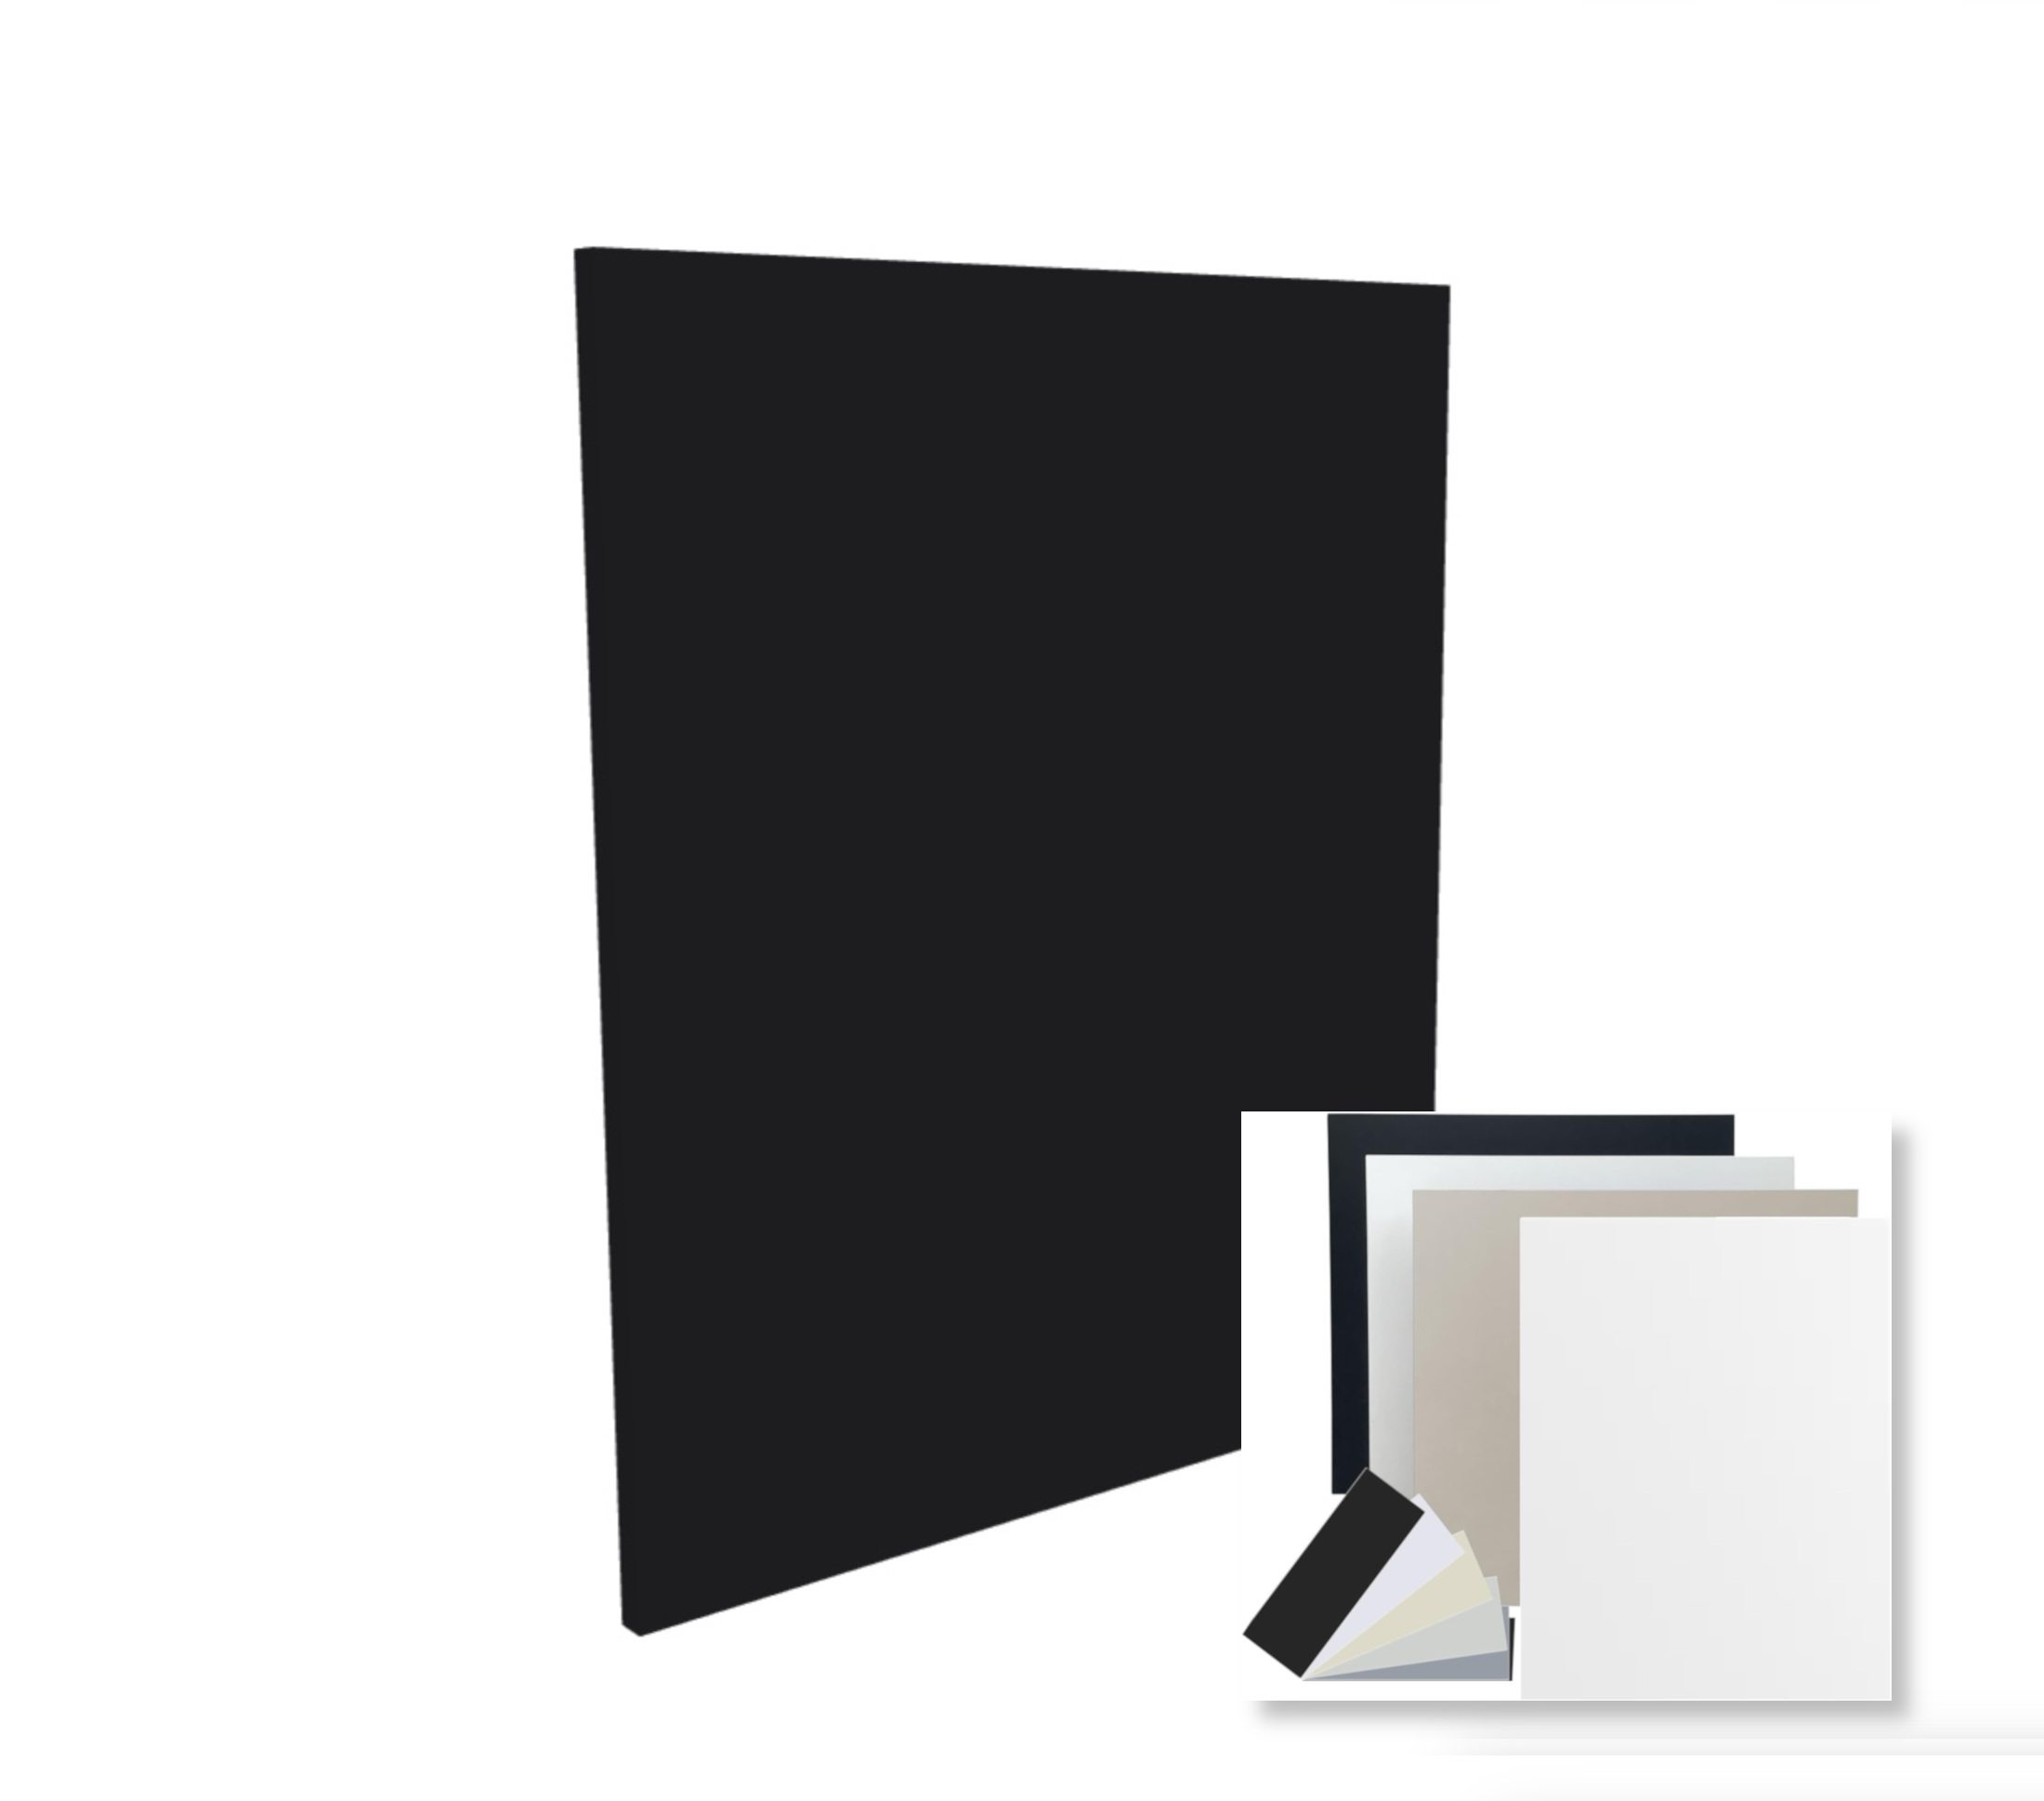 Geschirrspülerfront Schwarz Perl Frontblende Tür 19mm voll-, teilintegriert oder n. Maß - Tischlerware Qualität aus Deutschland